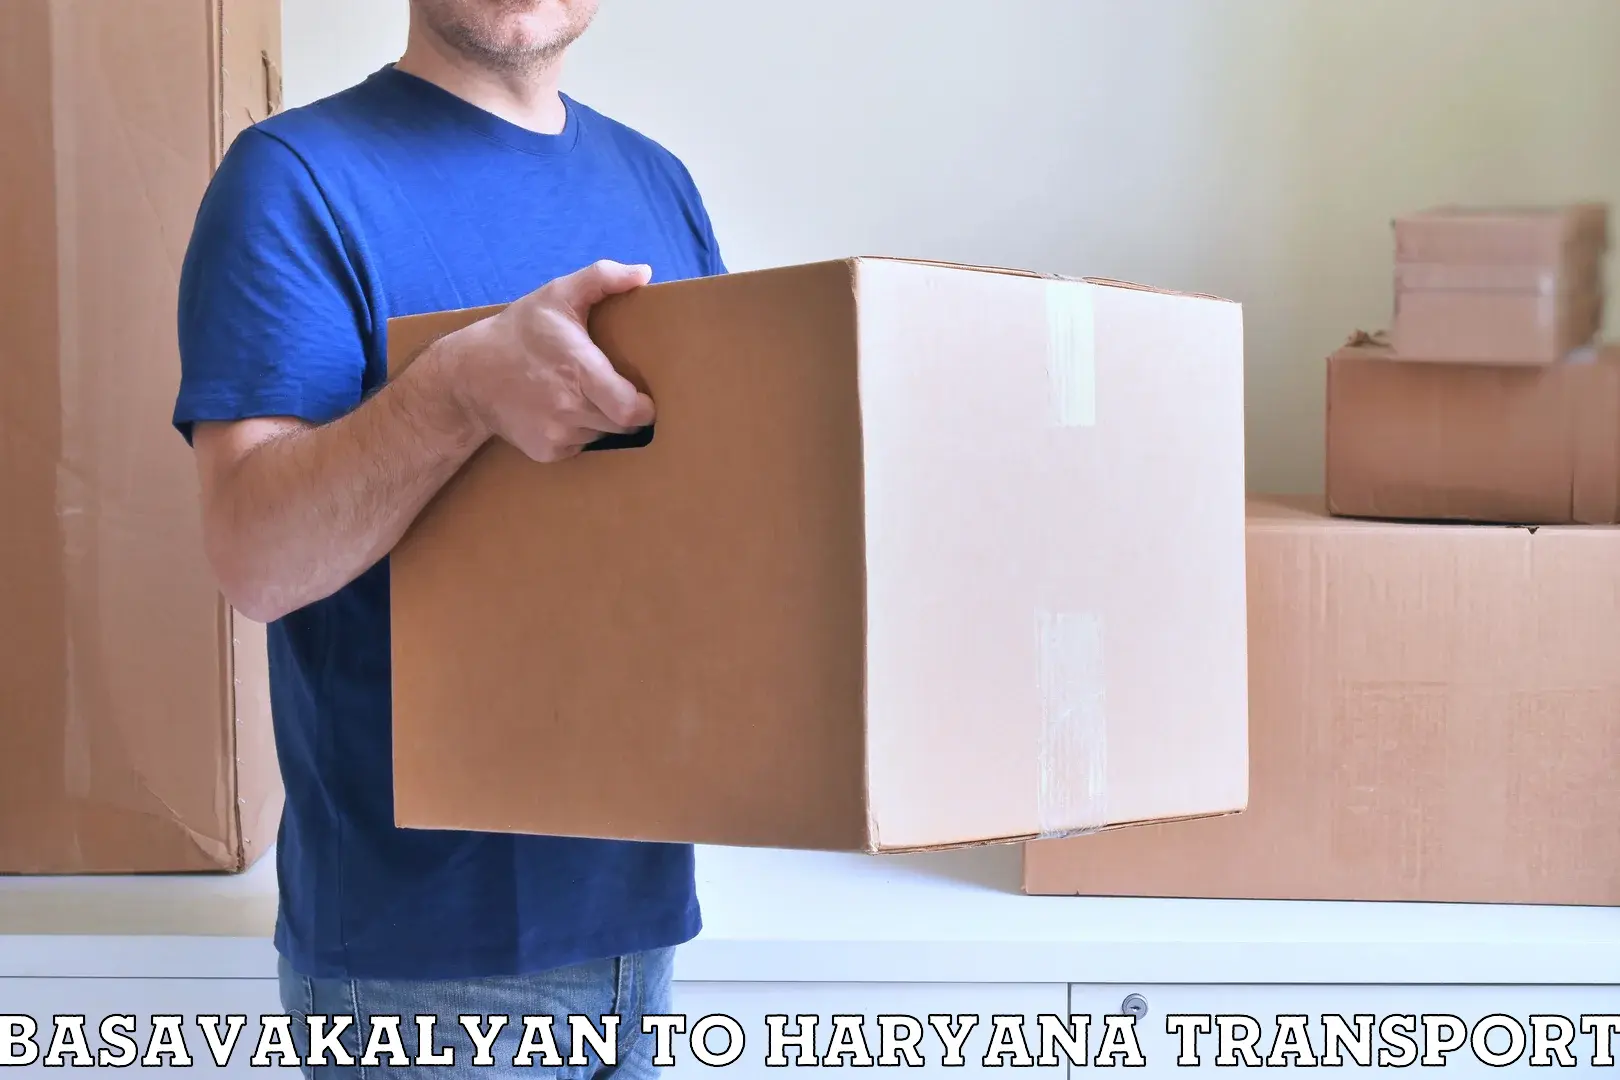 Bike shipping service Basavakalyan to Odhan